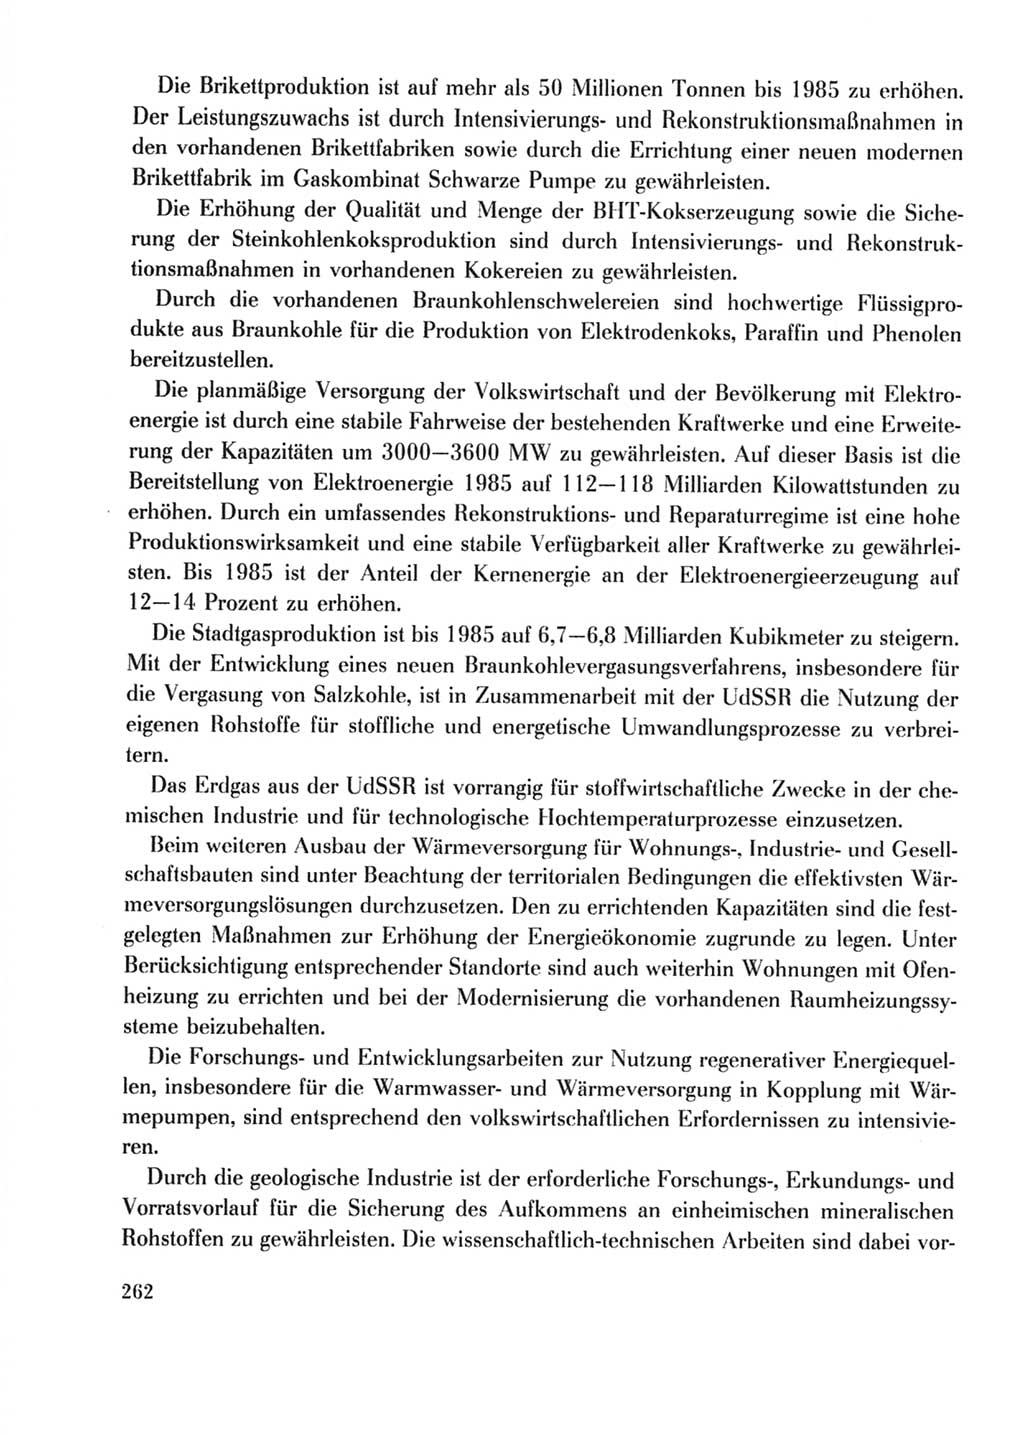 Protokoll der Verhandlungen des Ⅹ. Parteitages der Sozialistischen Einheitspartei Deutschlands (SED) [Deutsche Demokratische Republik (DDR)] 1981, Band 2, Seite 262 (Prot. Verh. Ⅹ. PT SED DDR 1981, Bd. 2, S. 262)